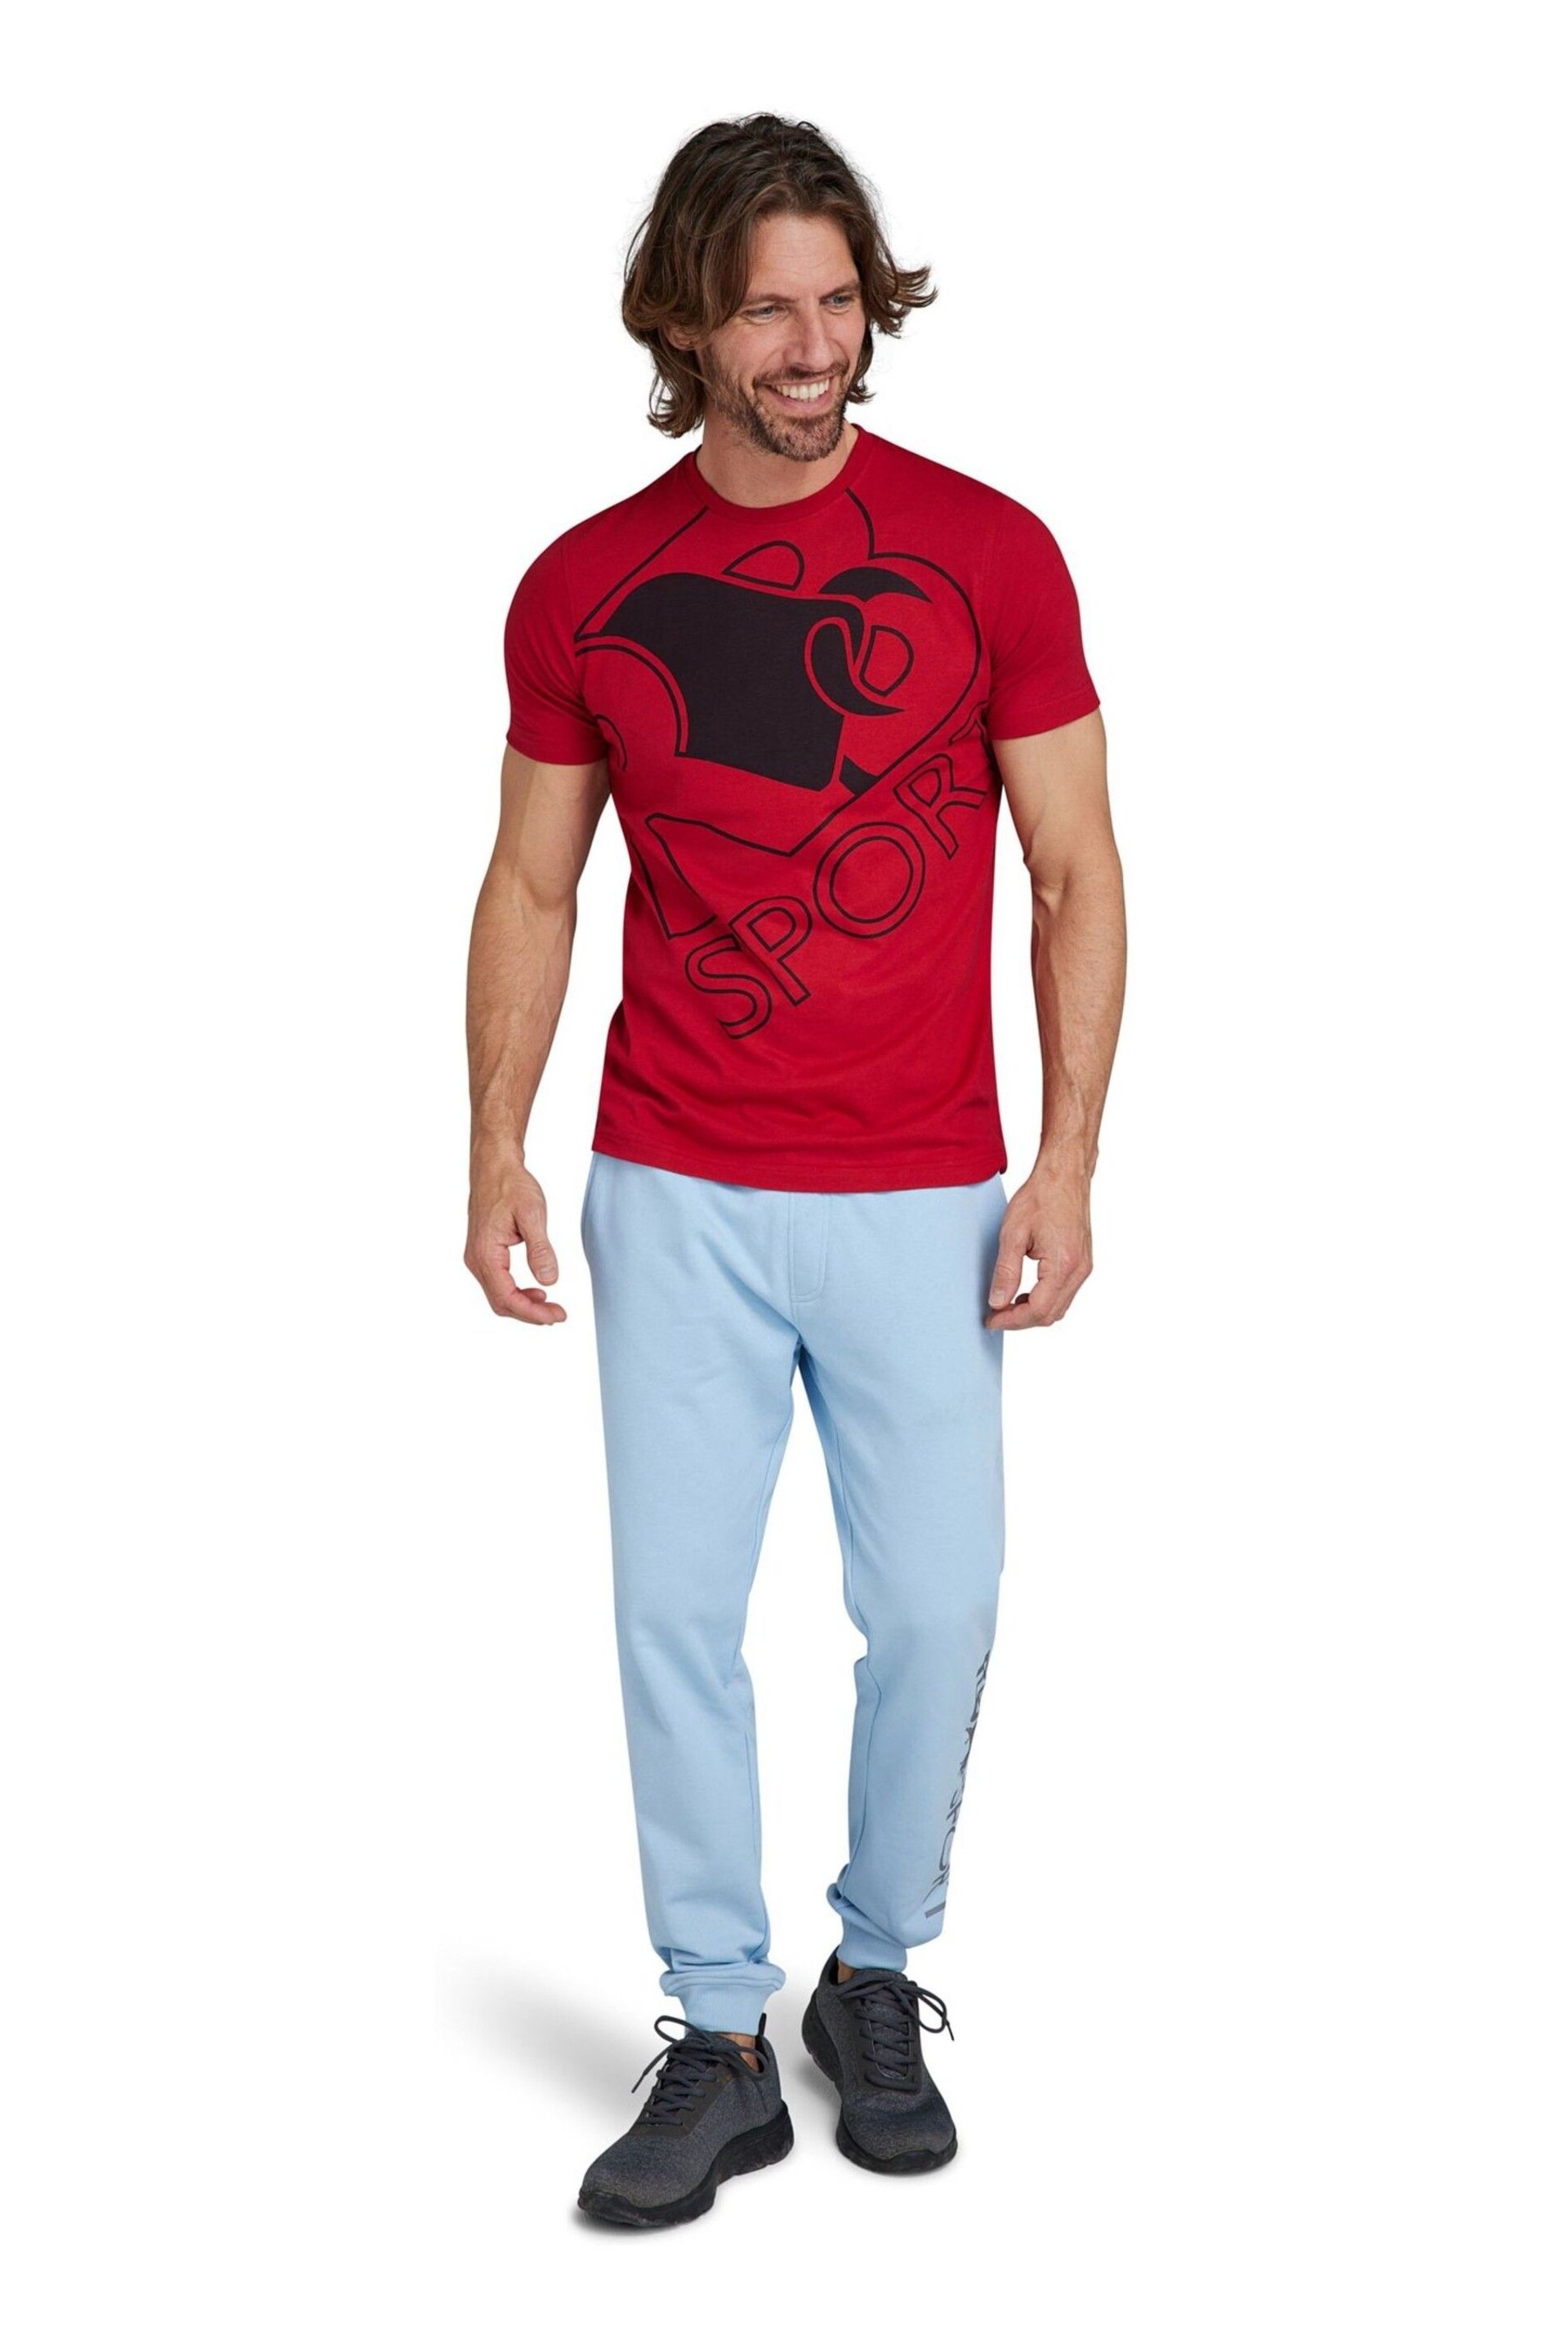 Raging Bull Red Sport Bull T-Shirt - Image 2 of 6